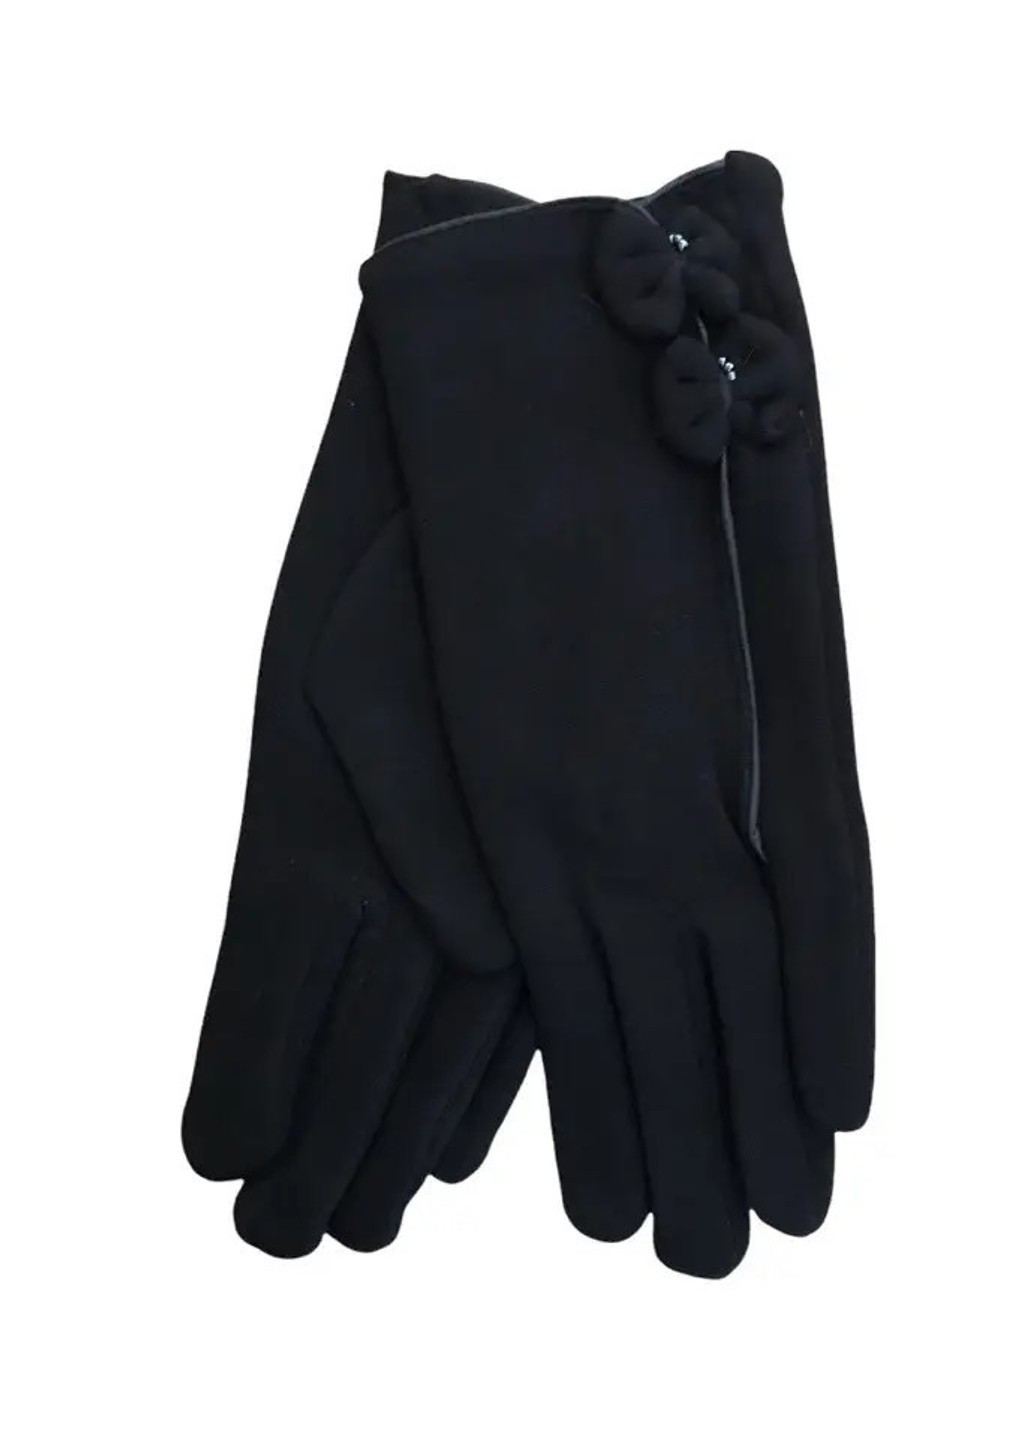 Женские стрейчевые перчатки чёрные 8722s1 S BR-S (261771543)